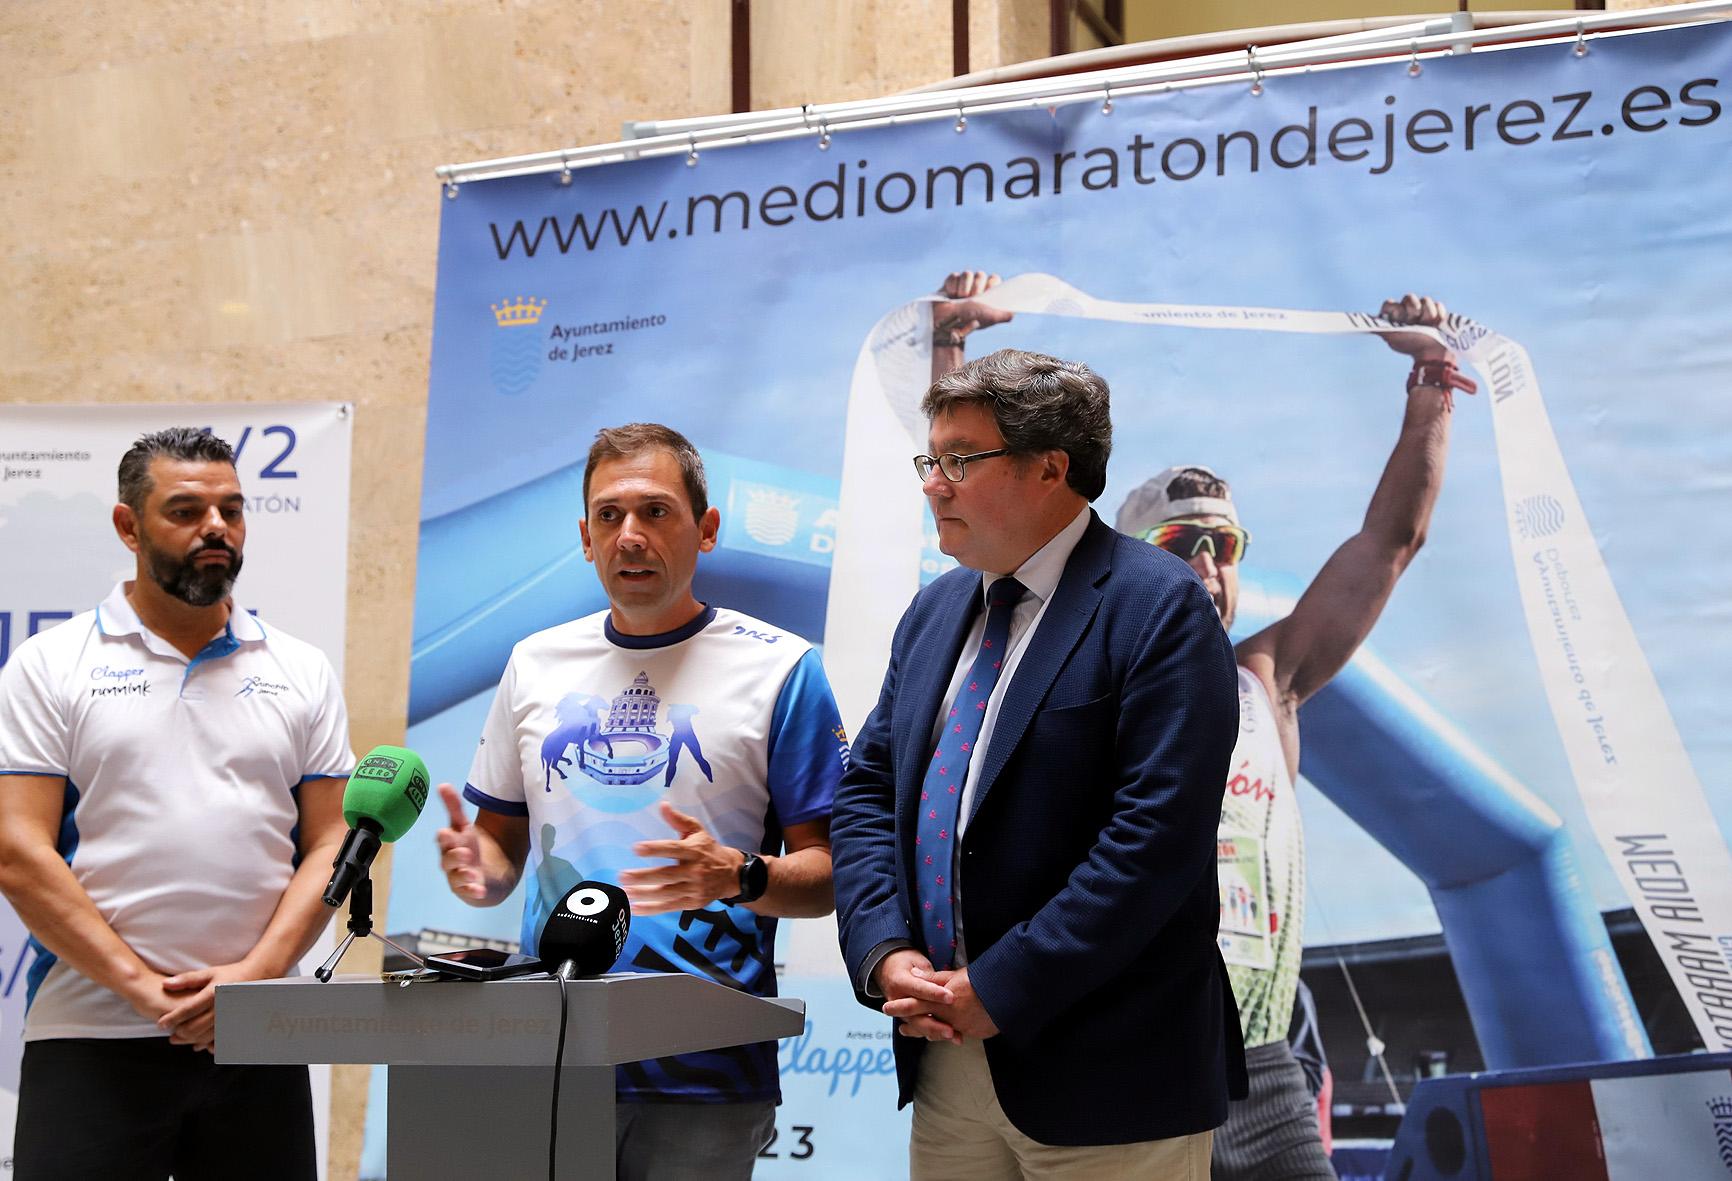 La XXVII Media Maratón de Jerez estrena el domingo nueva fecha y recorrido con paso por la Real Escuela y Plaza de Toros